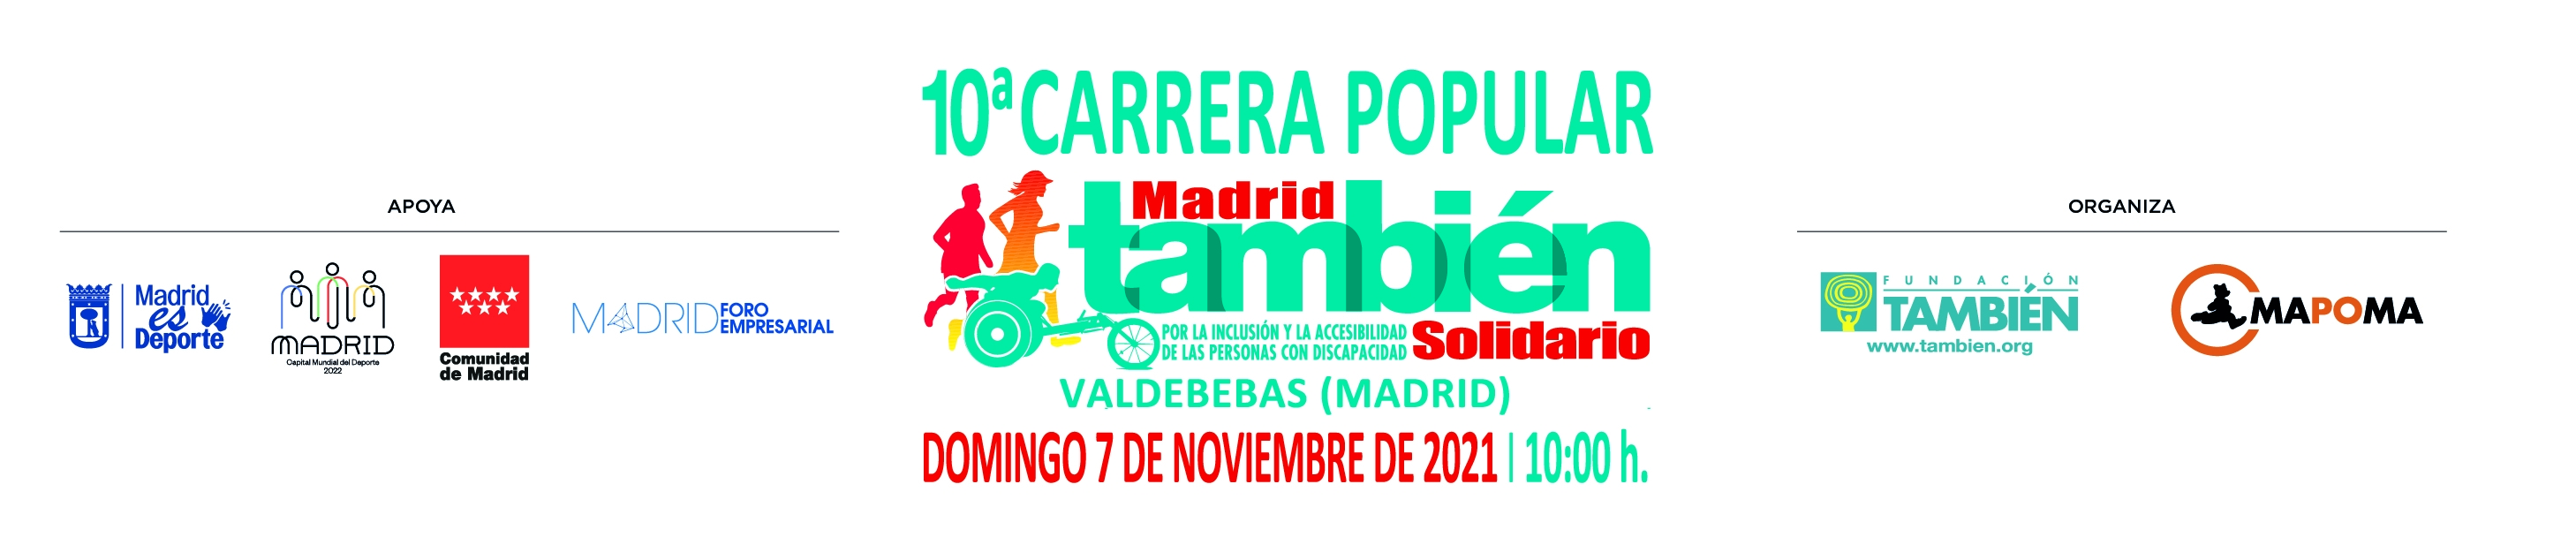 10ª CARRERA POPULAR MADRID TAMBIÉN SOLIDARIO